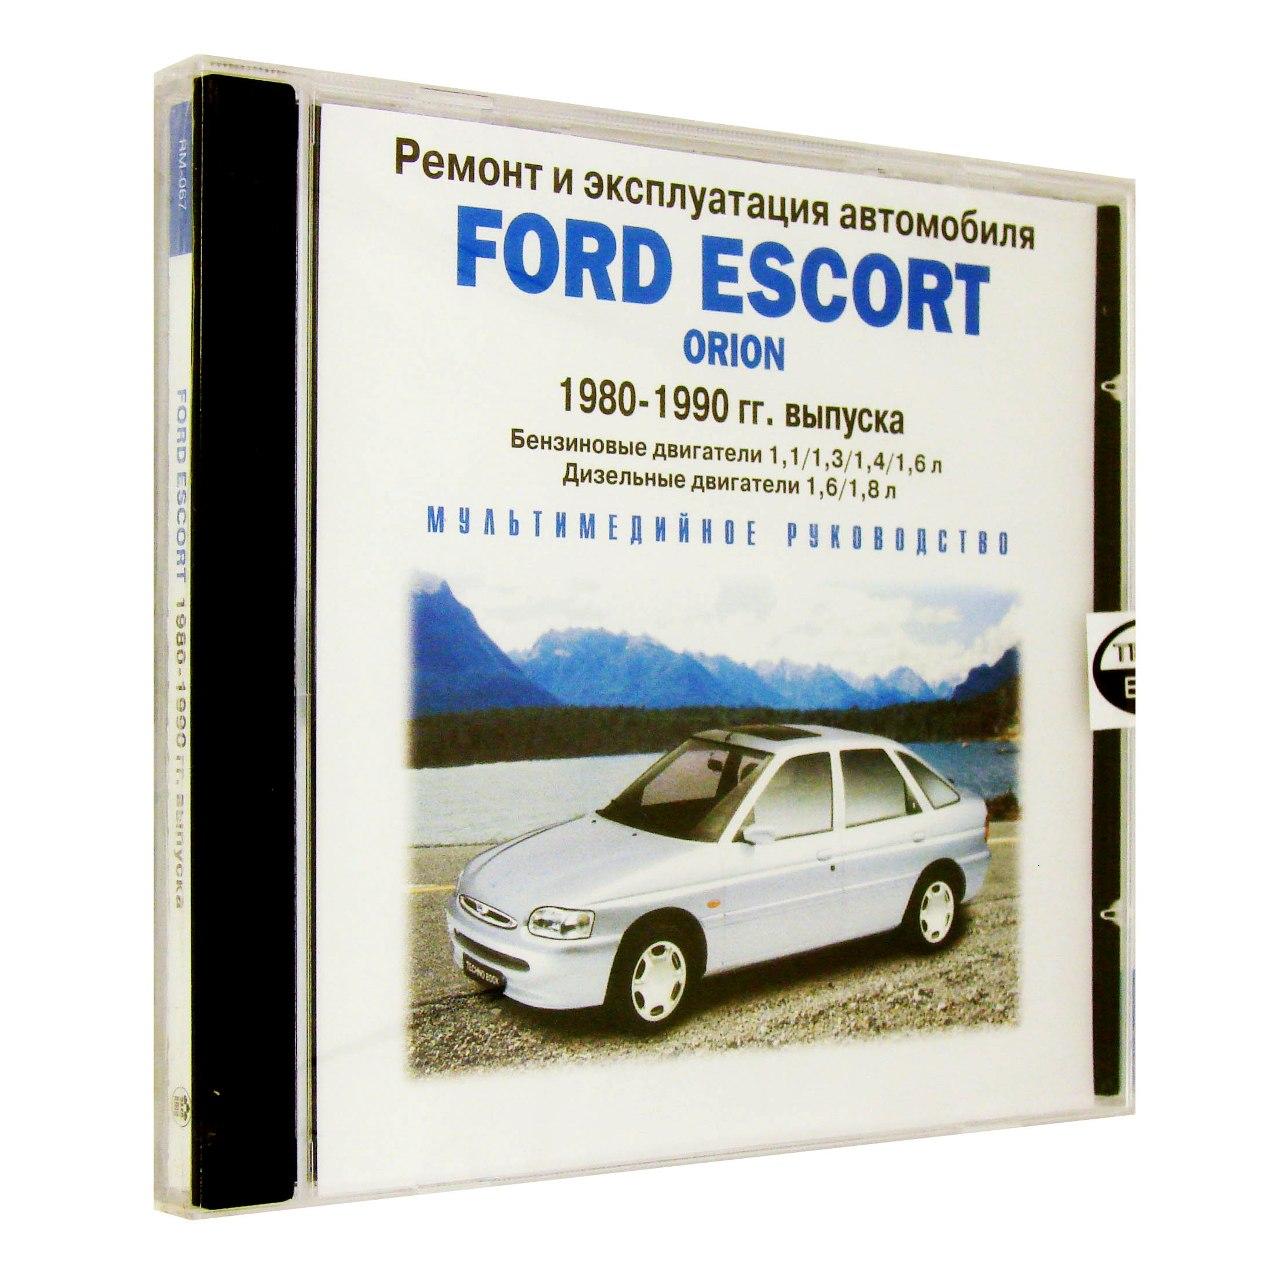 Компьютерный компакт-диск Ford Escort 1980-1990. Ремонт и эксп. (ПК), фирма "РМГ Мультимедиа" 1 CD